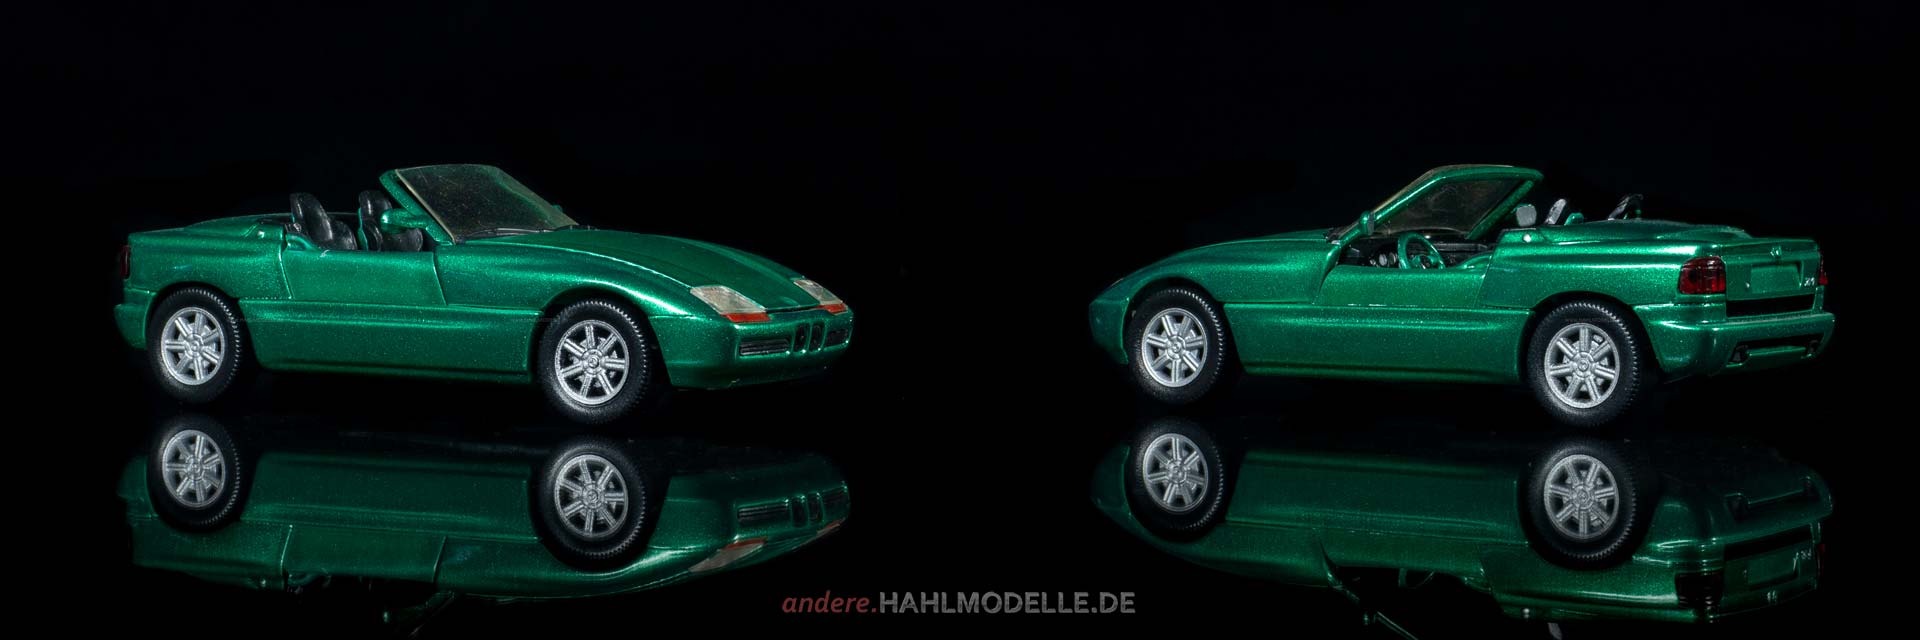 BMW Z1 (E30) | Roadster | Schabak | www.andere.hahlmodelle.de